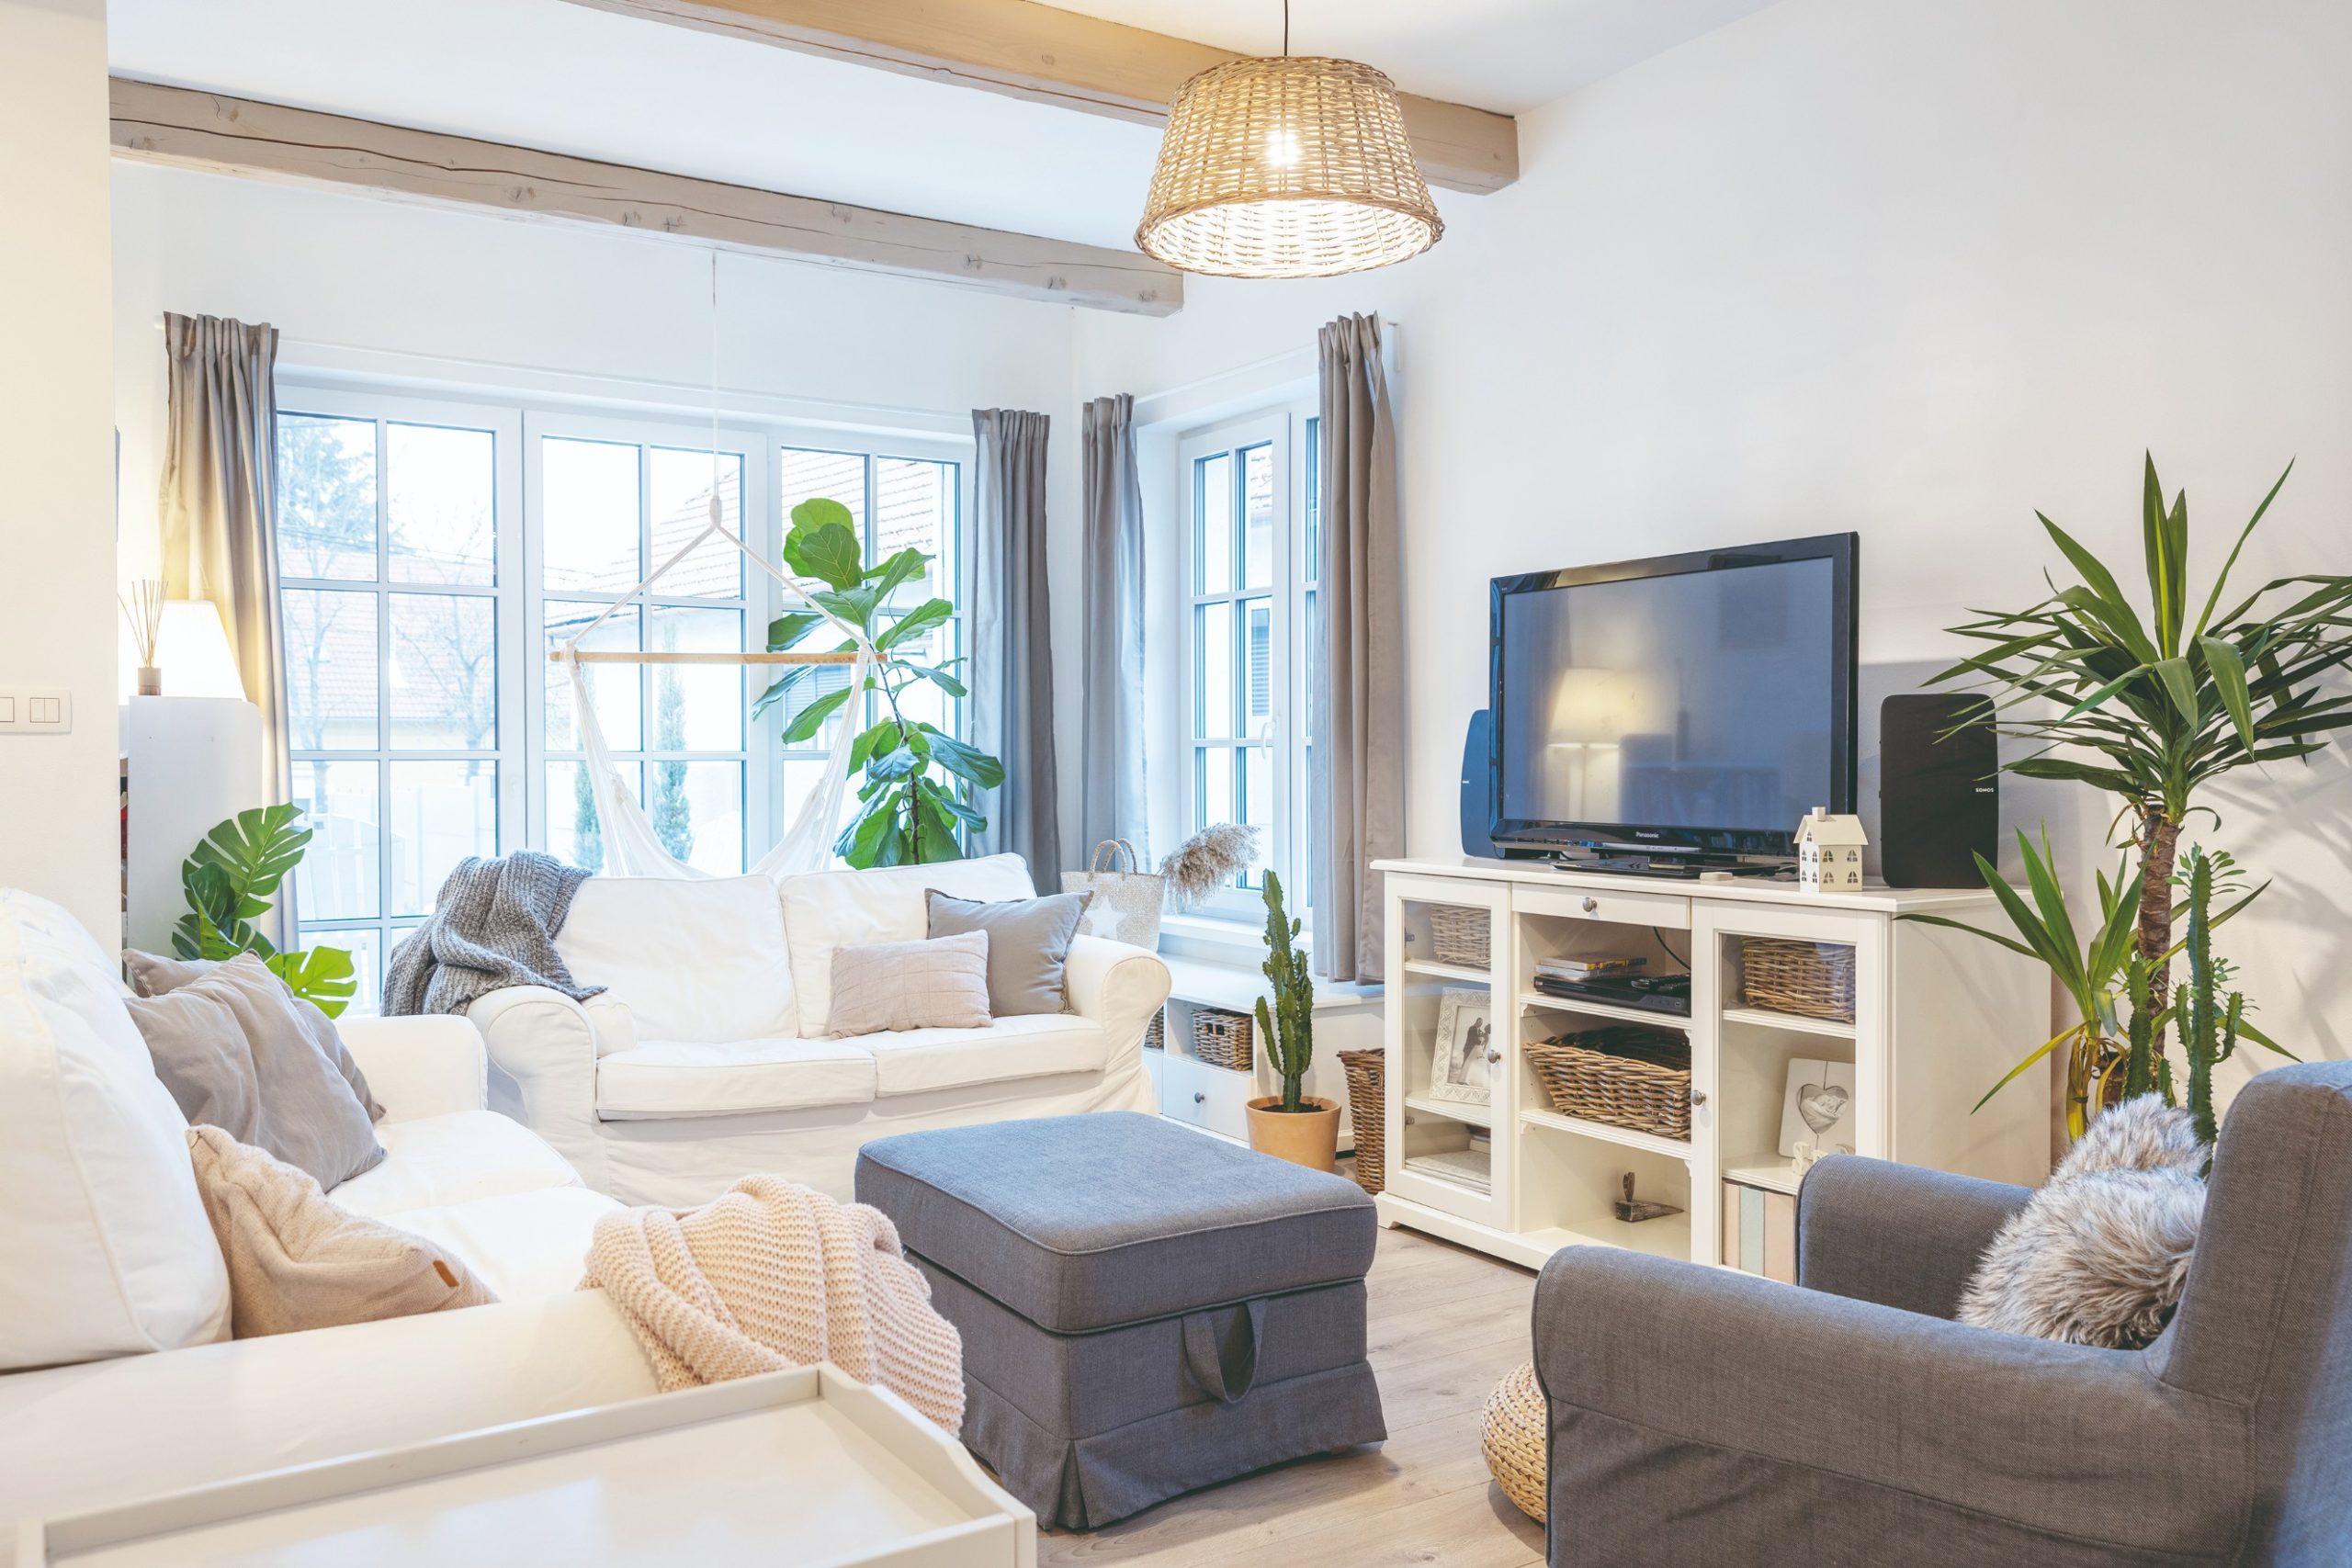 Obývací pokoj v provence stylu